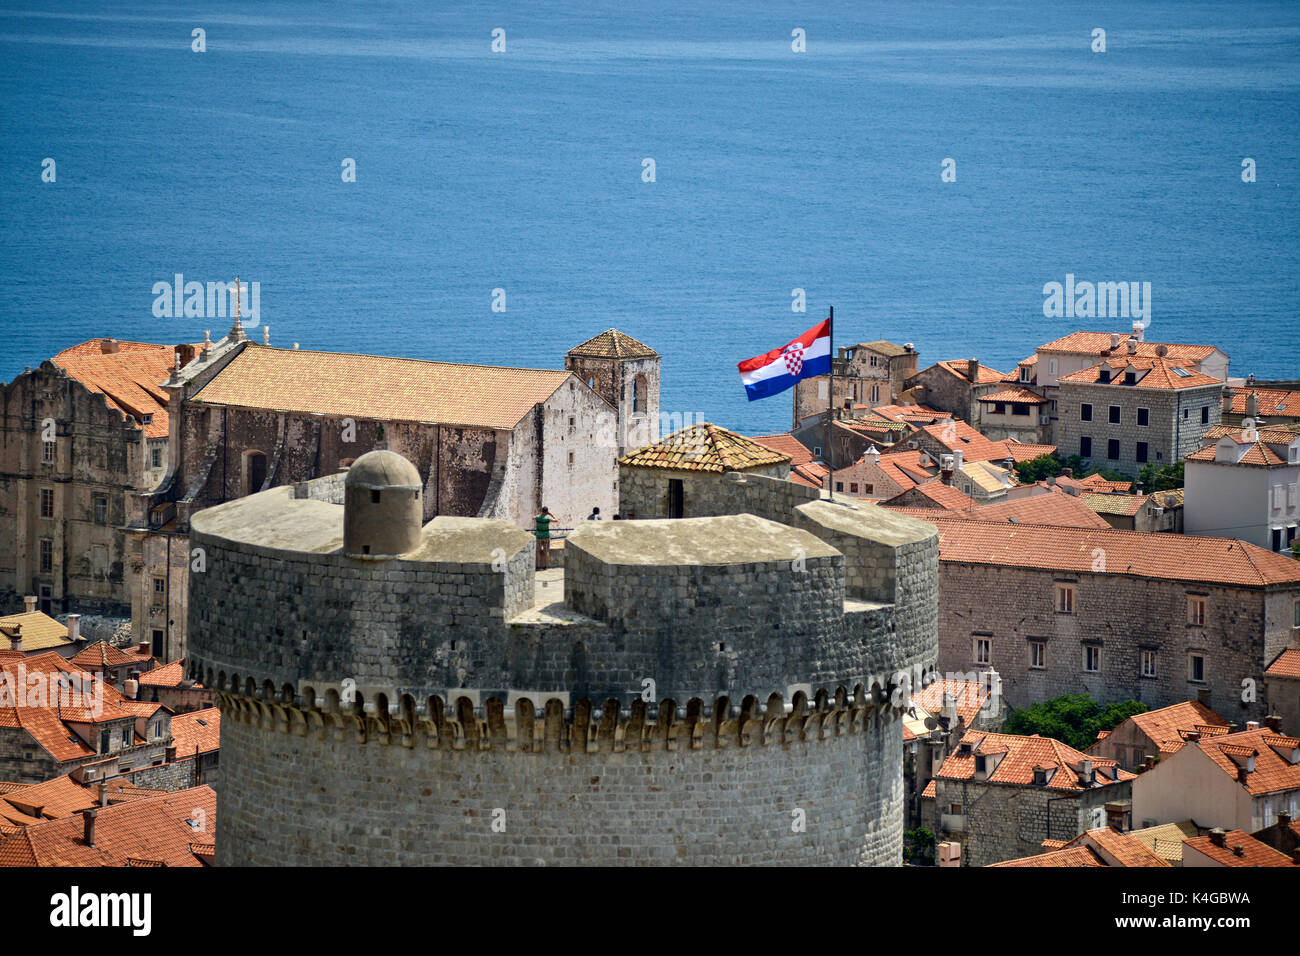 La vieille ville de Dubrovnik, avec drapeau croate Banque D'Images